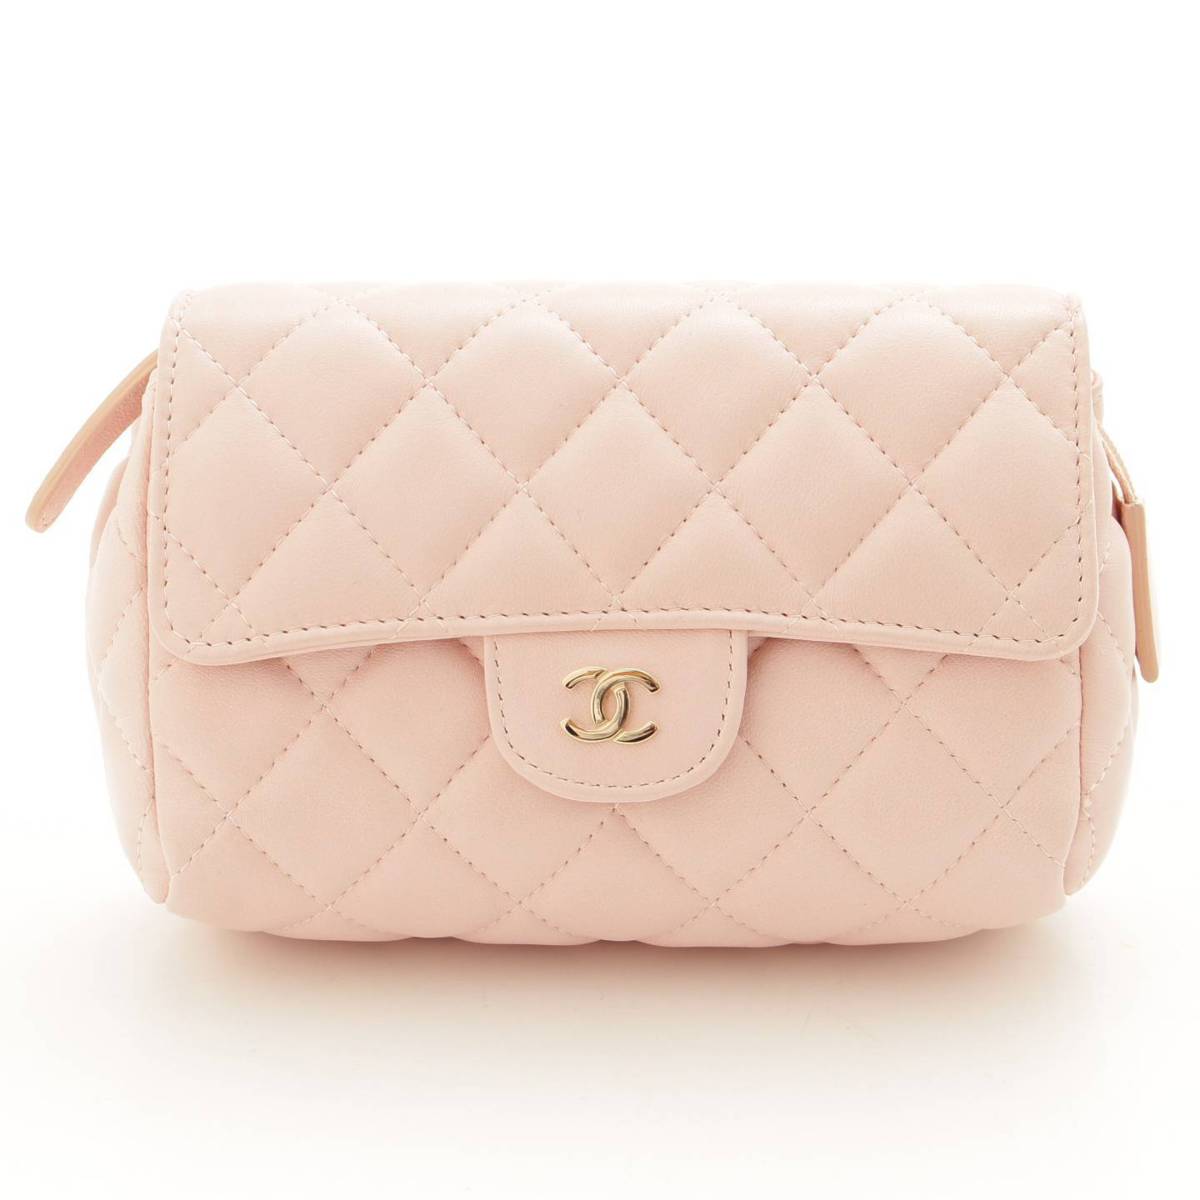 シャネル(Chanel) マトラッセ ミラー付き 化粧ポーチ 小物入れ ピンク